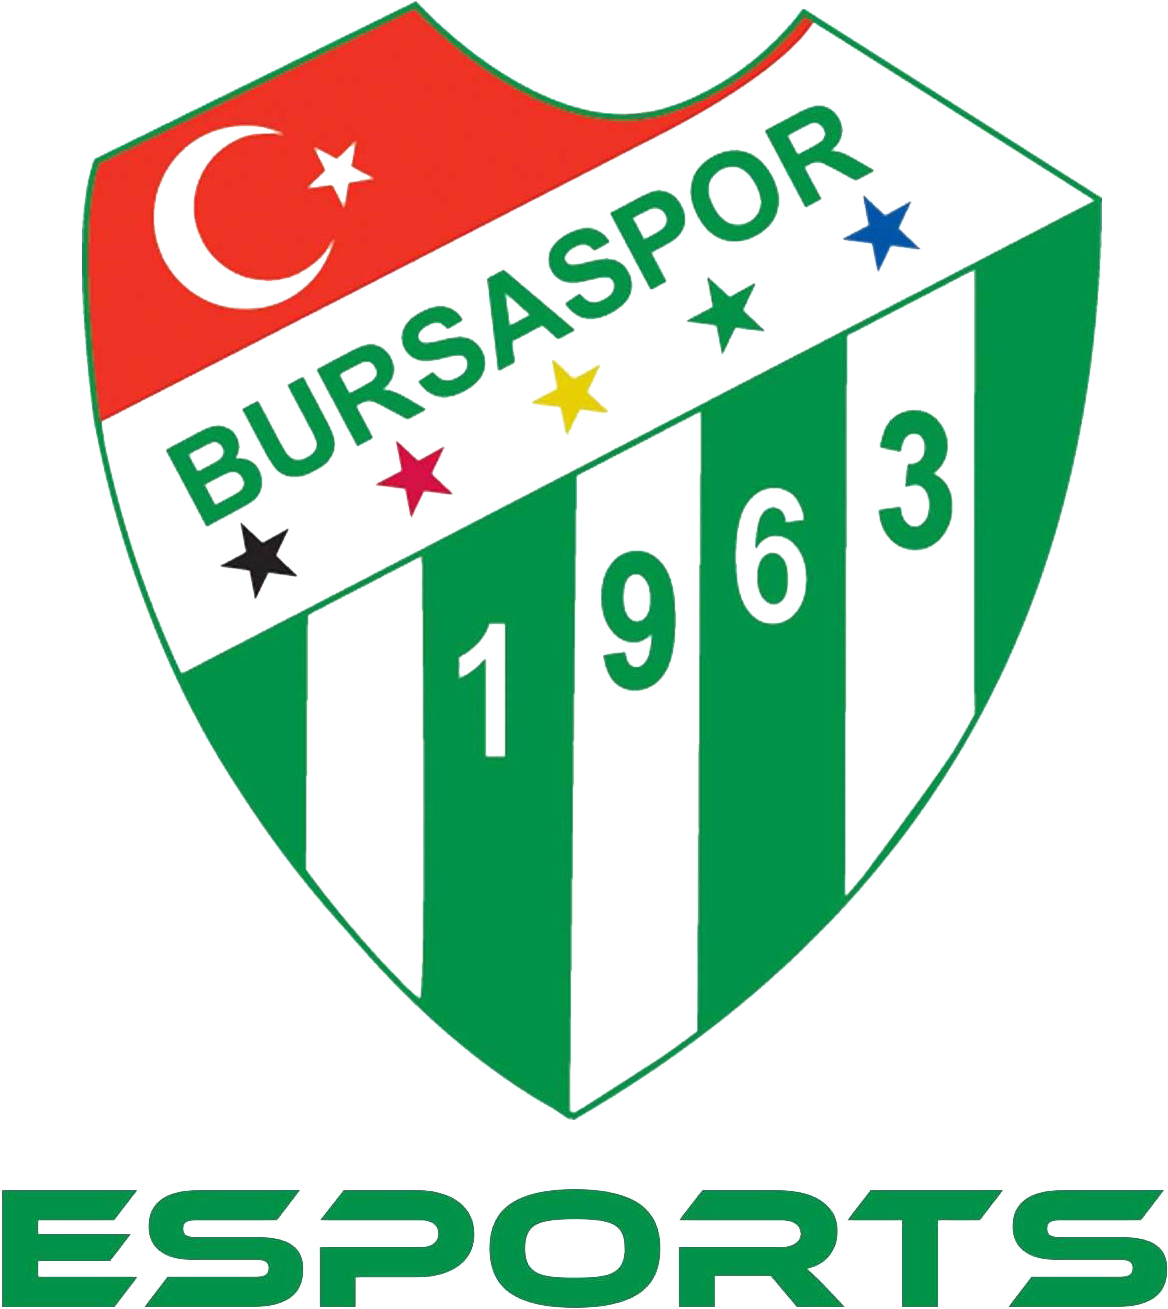 Bursaspor Esports League Of Legends - Bursaspor Esports Png (1308x1308), Png Download